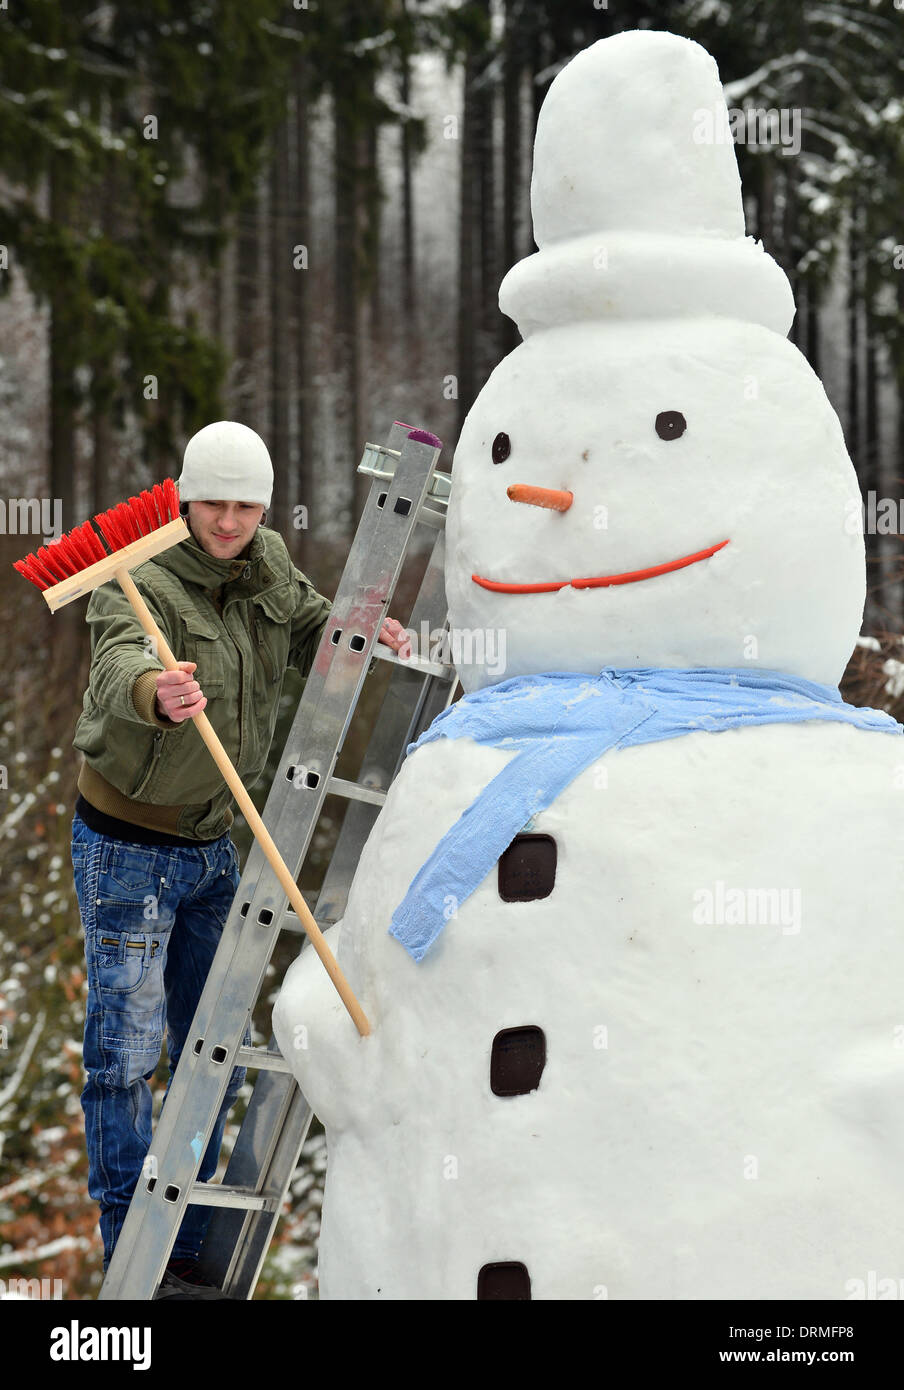 Katzhuette, Alemania. 29 de enero de 2014. A cuatro metros de altura, el  muñeco de nieve está construido en Katzhuette, Alemania, 29 de enero de  2014. Familia Mattig usa dos a tres